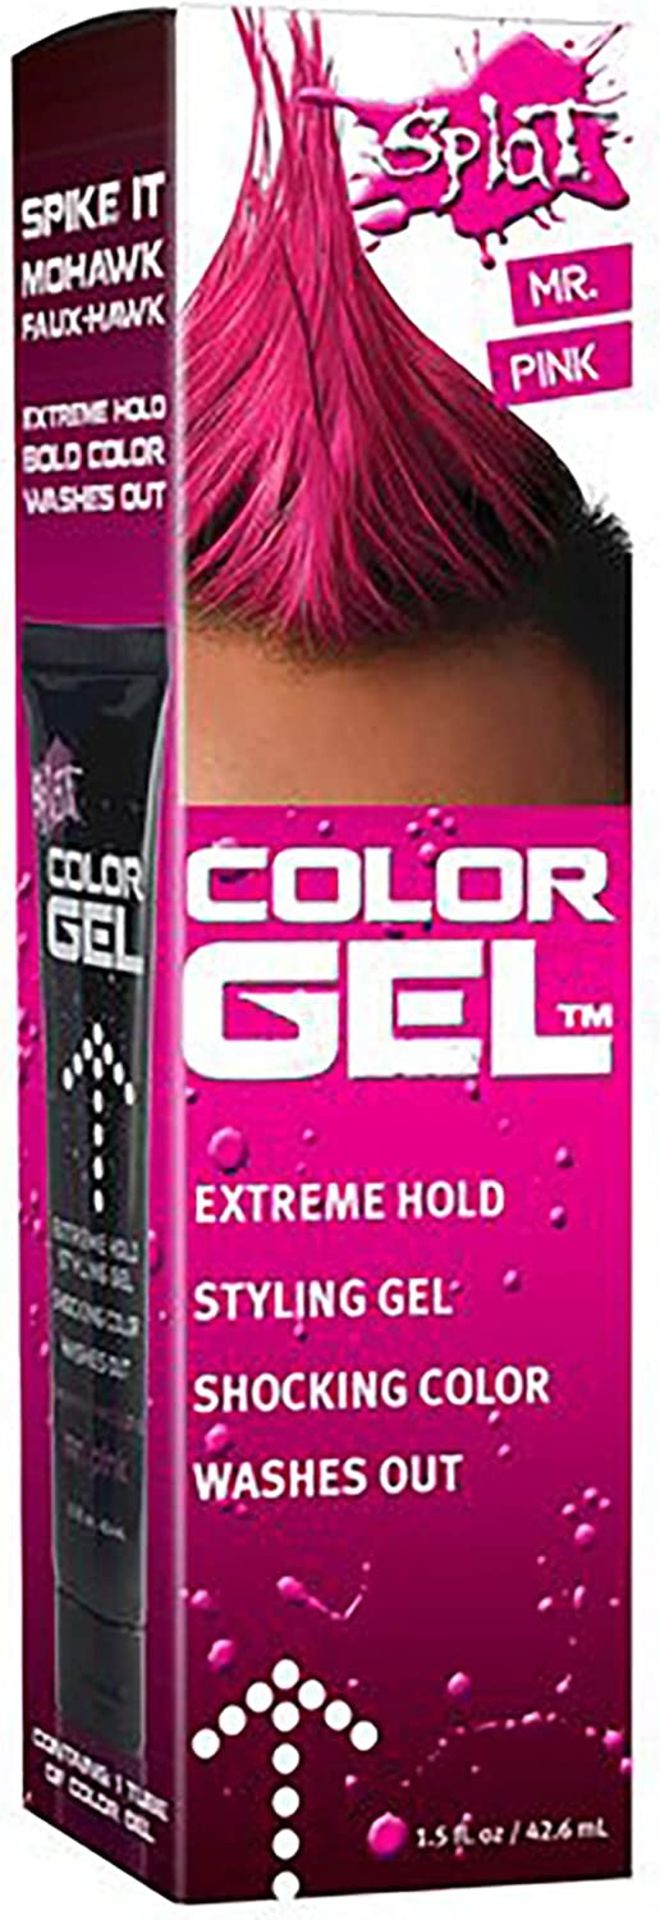 24 x Pink & Kryponite Splat Hair Dye RRP £13.85 ea